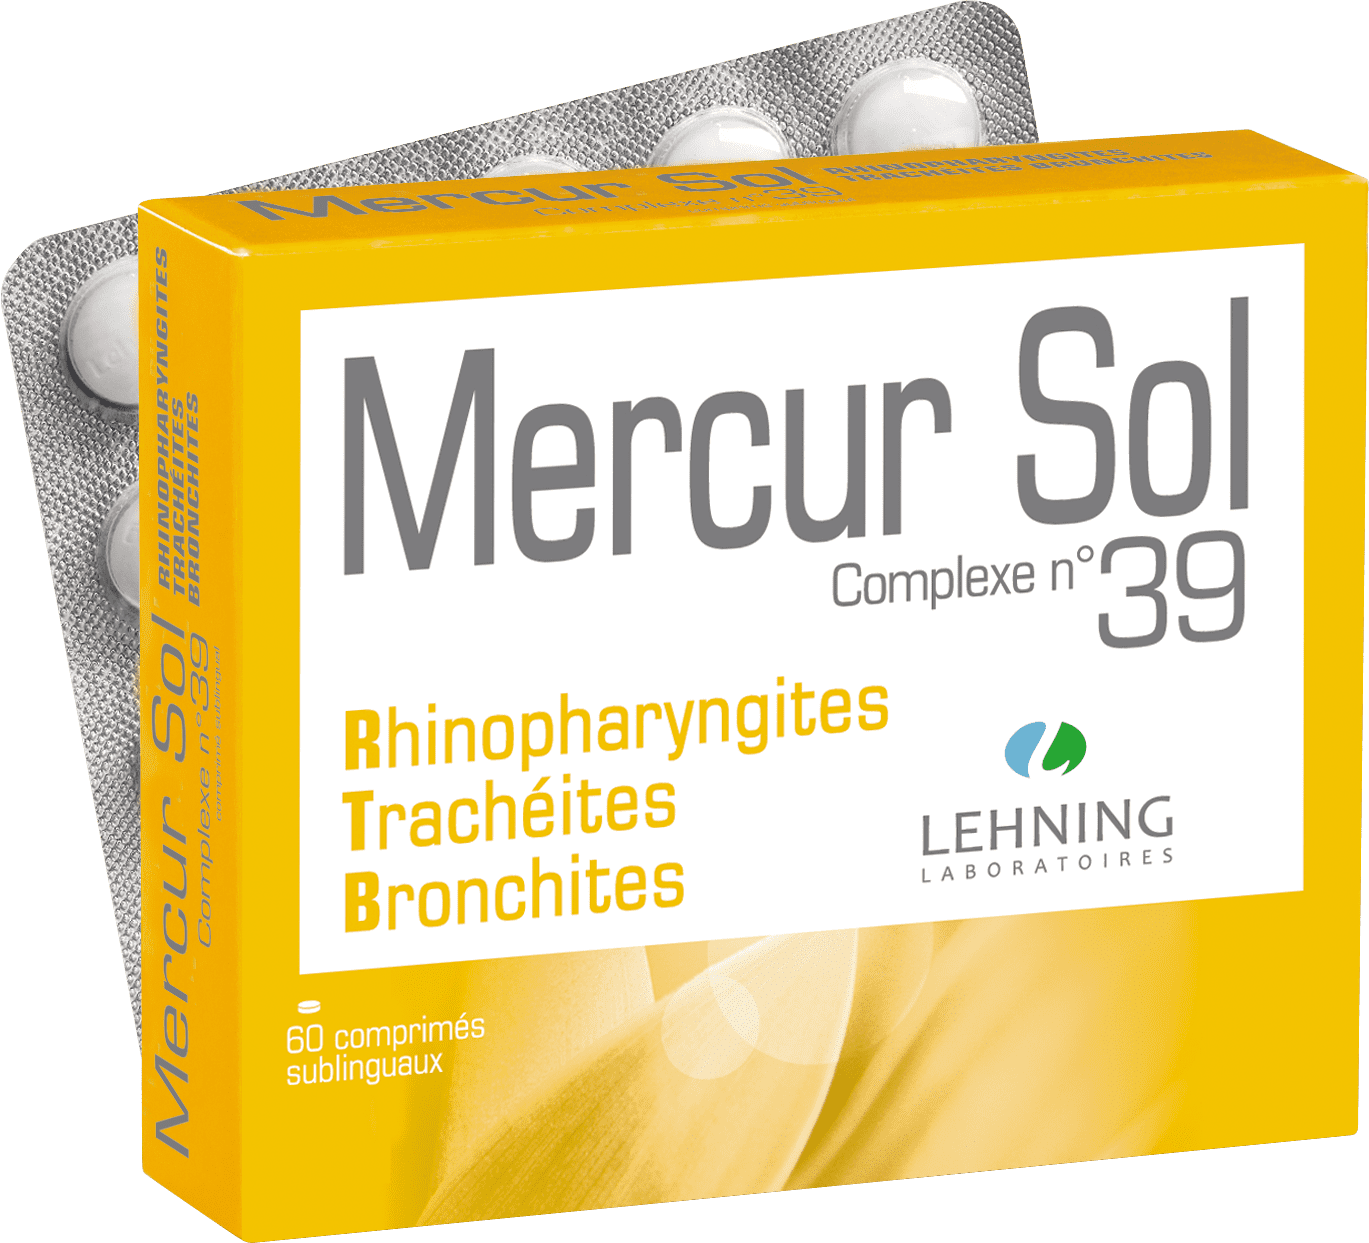 Mercur sol complexe n°39 Lehning - boite de 60 comprimés